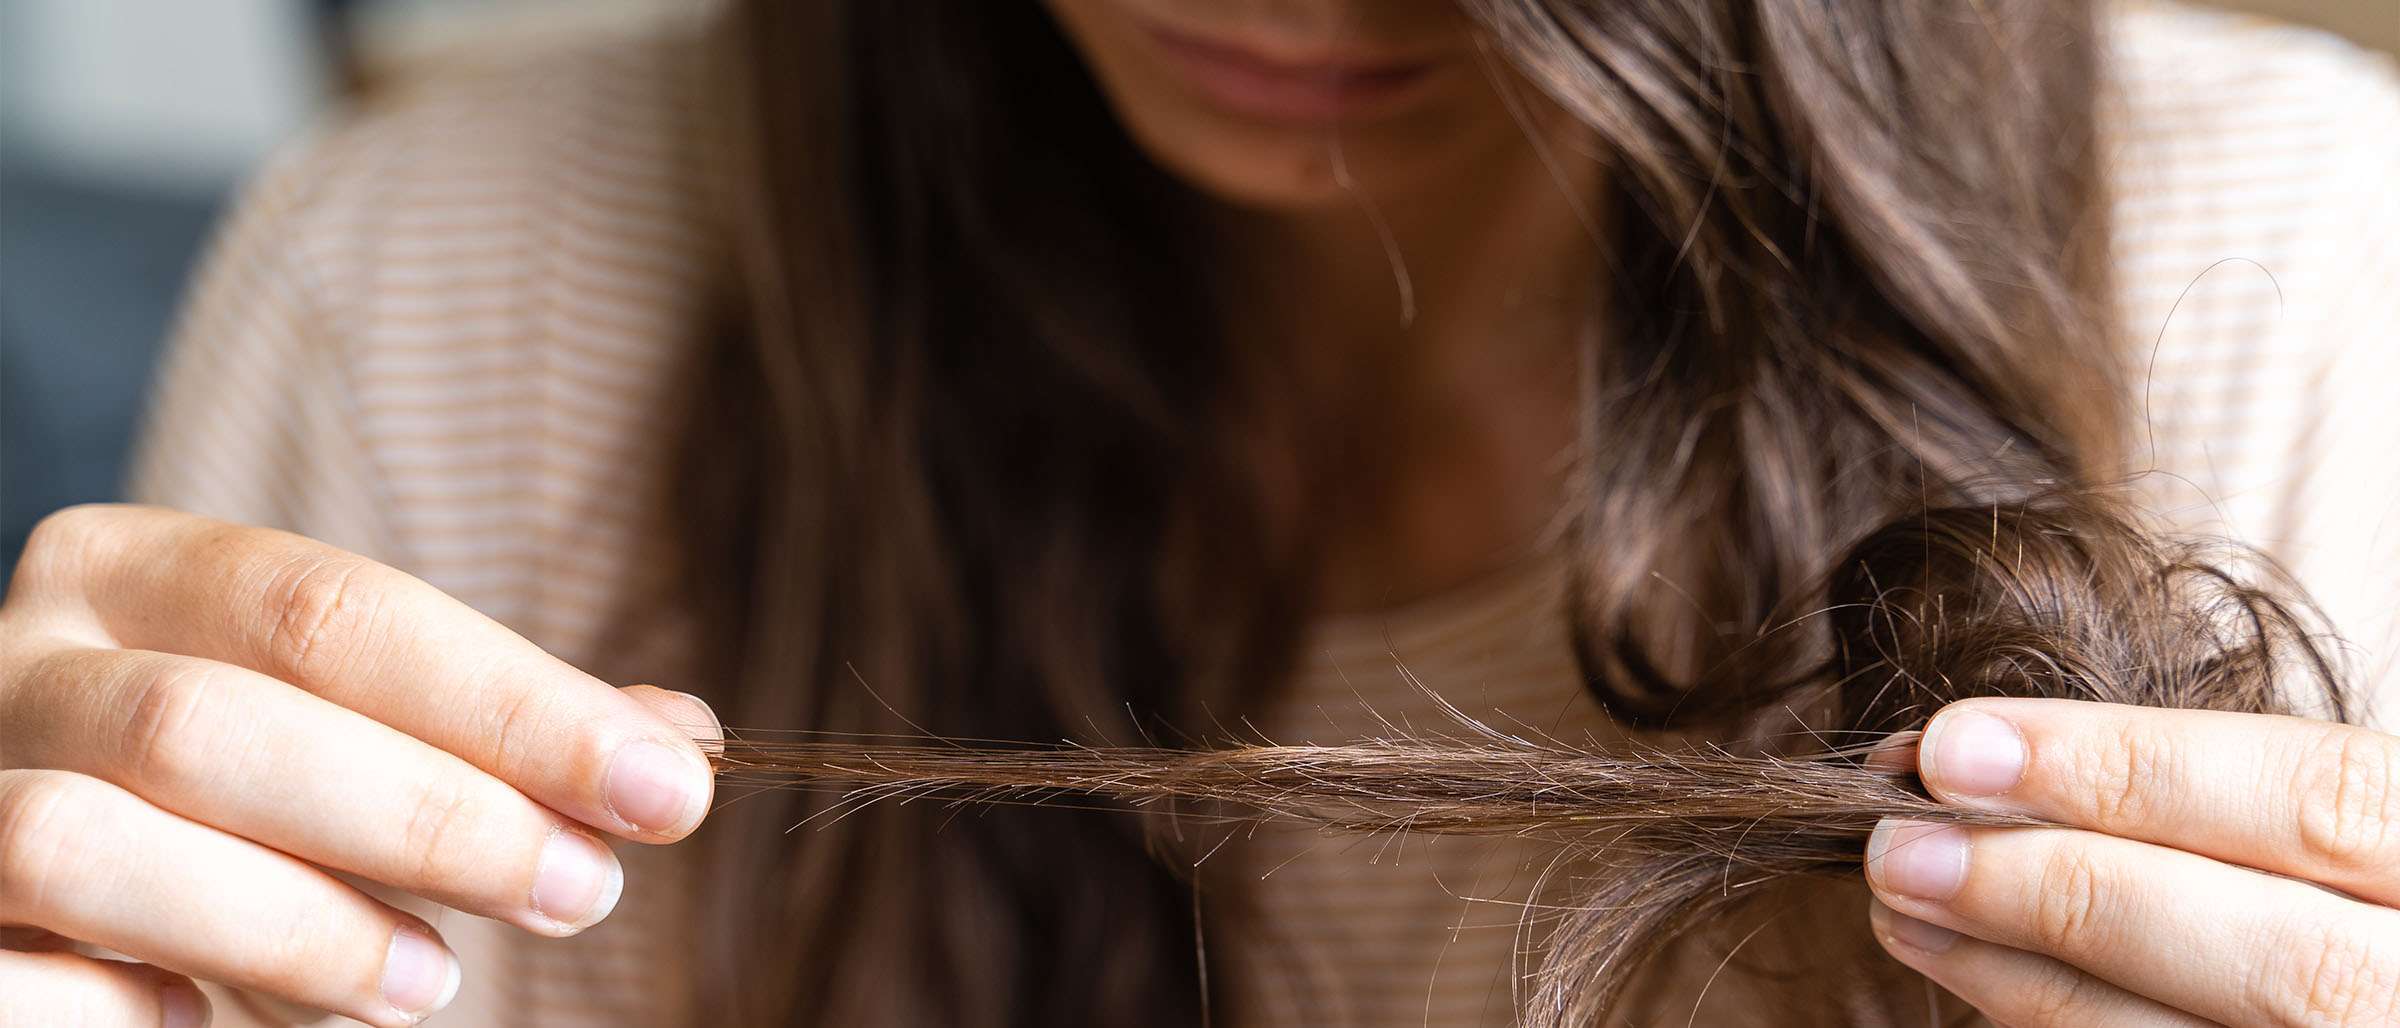 علاج تساقط الشعر: أربع خطوات لمحاربة هذه المشكلة